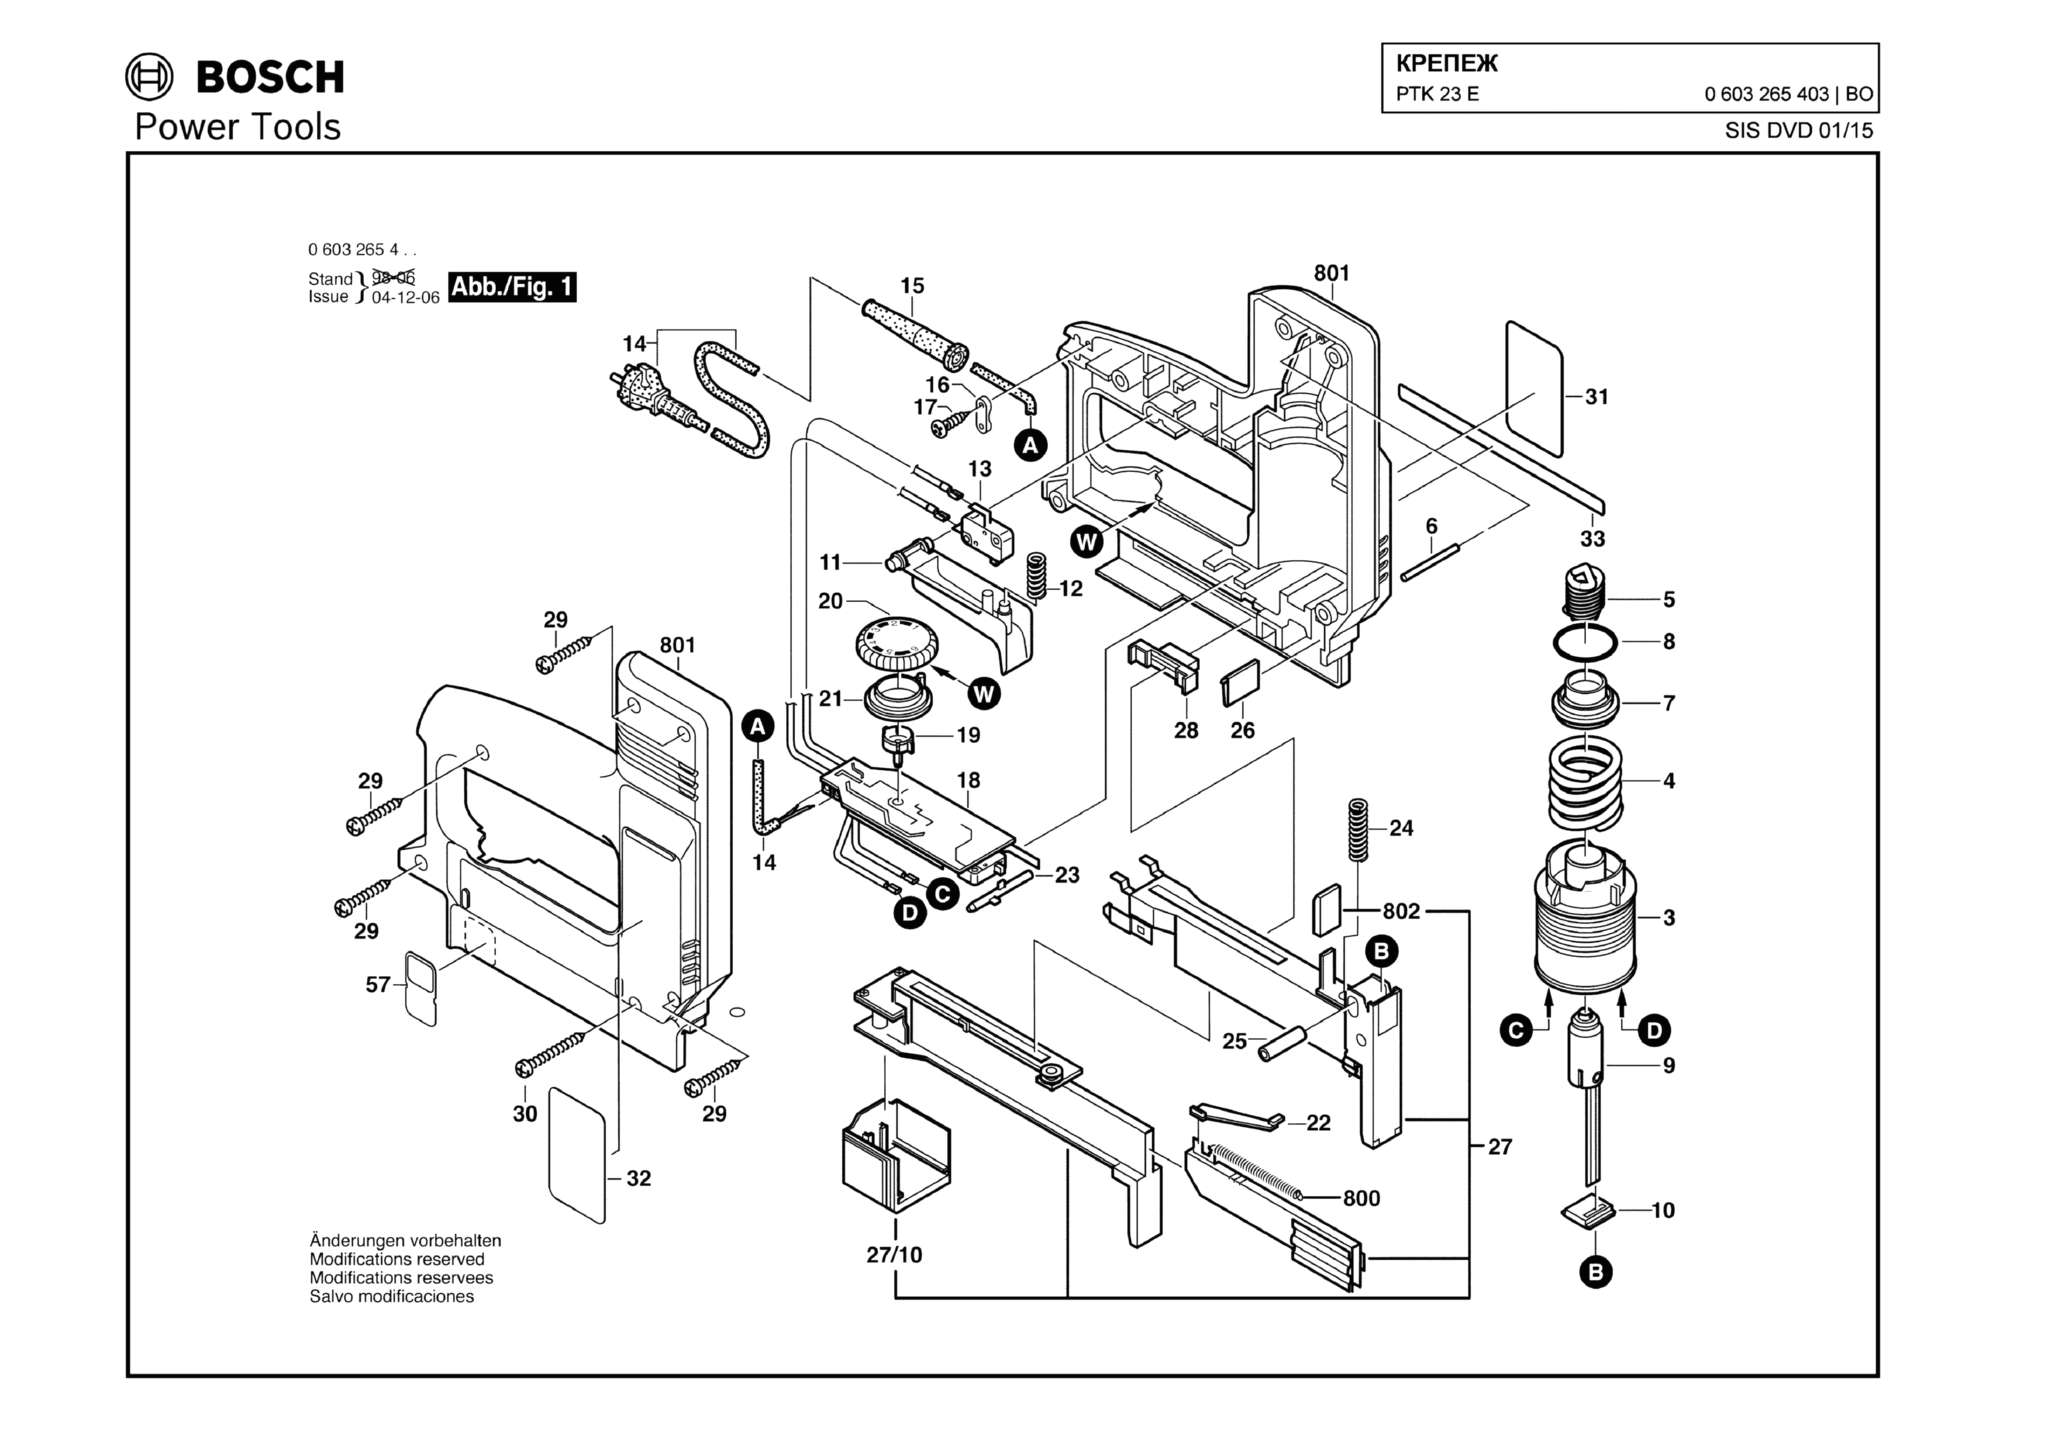 Запчасти, схема и деталировка Bosch PTK 23 E (ТИП 0603265403)